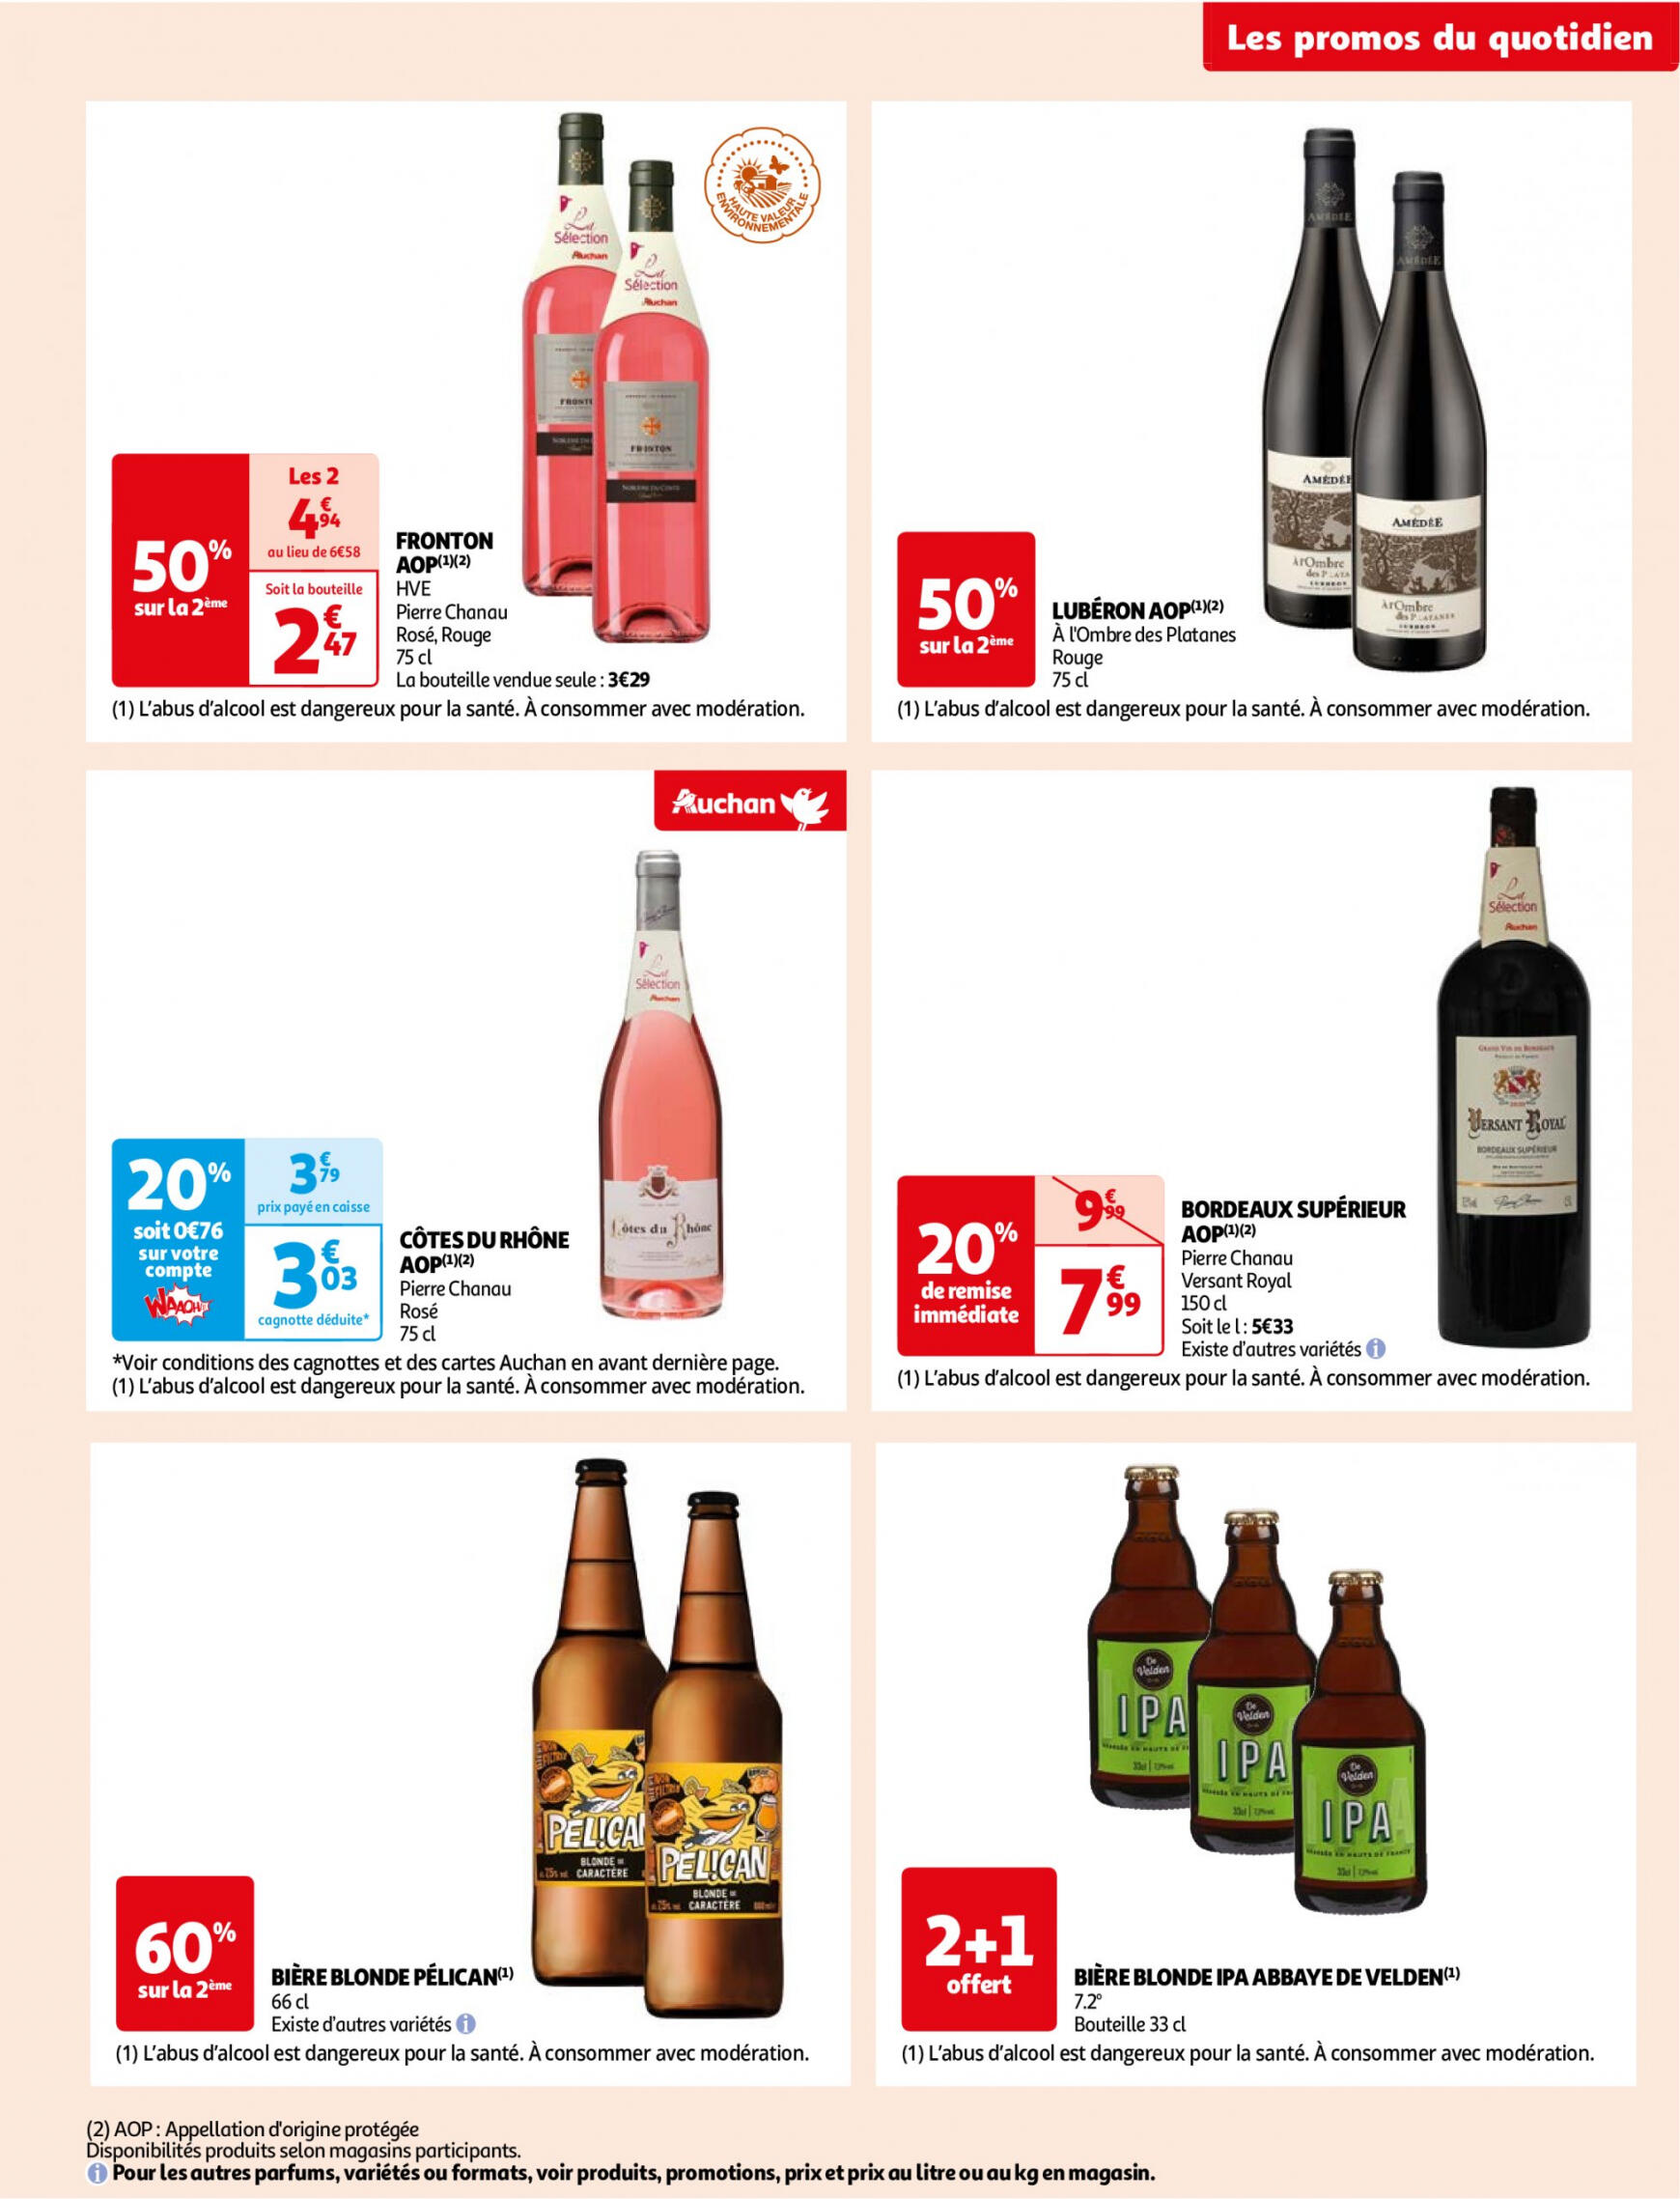 auchan - Prospectus Auchan Supermarché - Des économies au quotidien dans votre super actuel 14.05. - 02.06. - page: 7